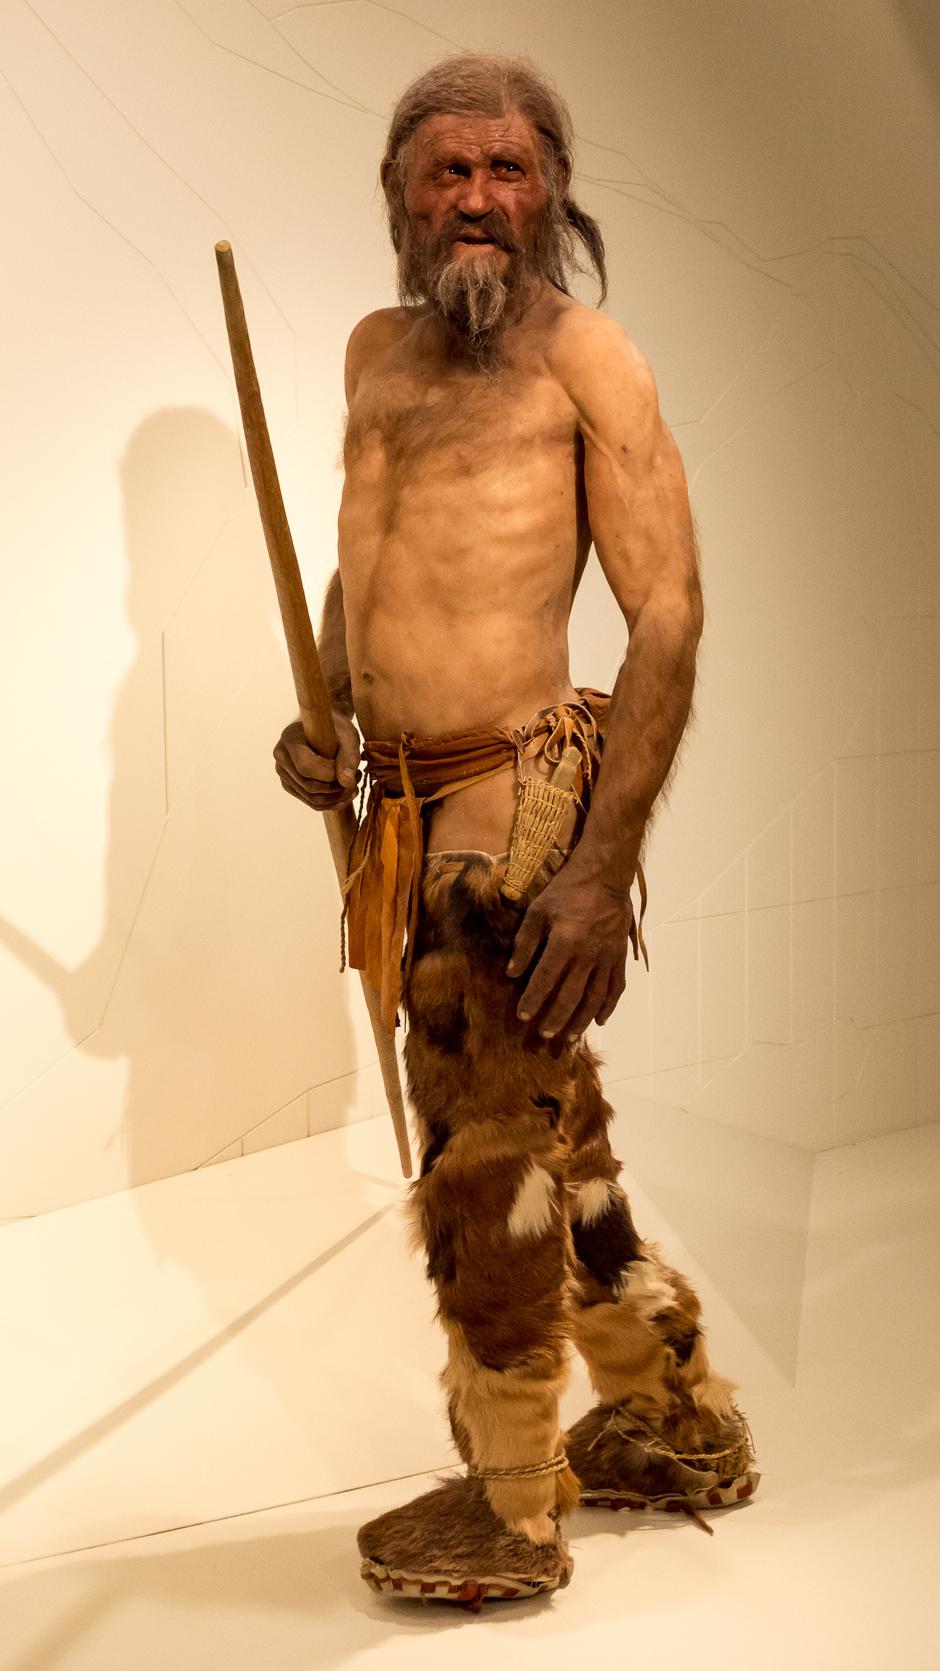 Ötzi, Tirolski ledeni čovjek umro prije 5300 godina, pronađen u ledu 1991. u Alpama | Author: Thilo Parg/ Fair use/ Wiki